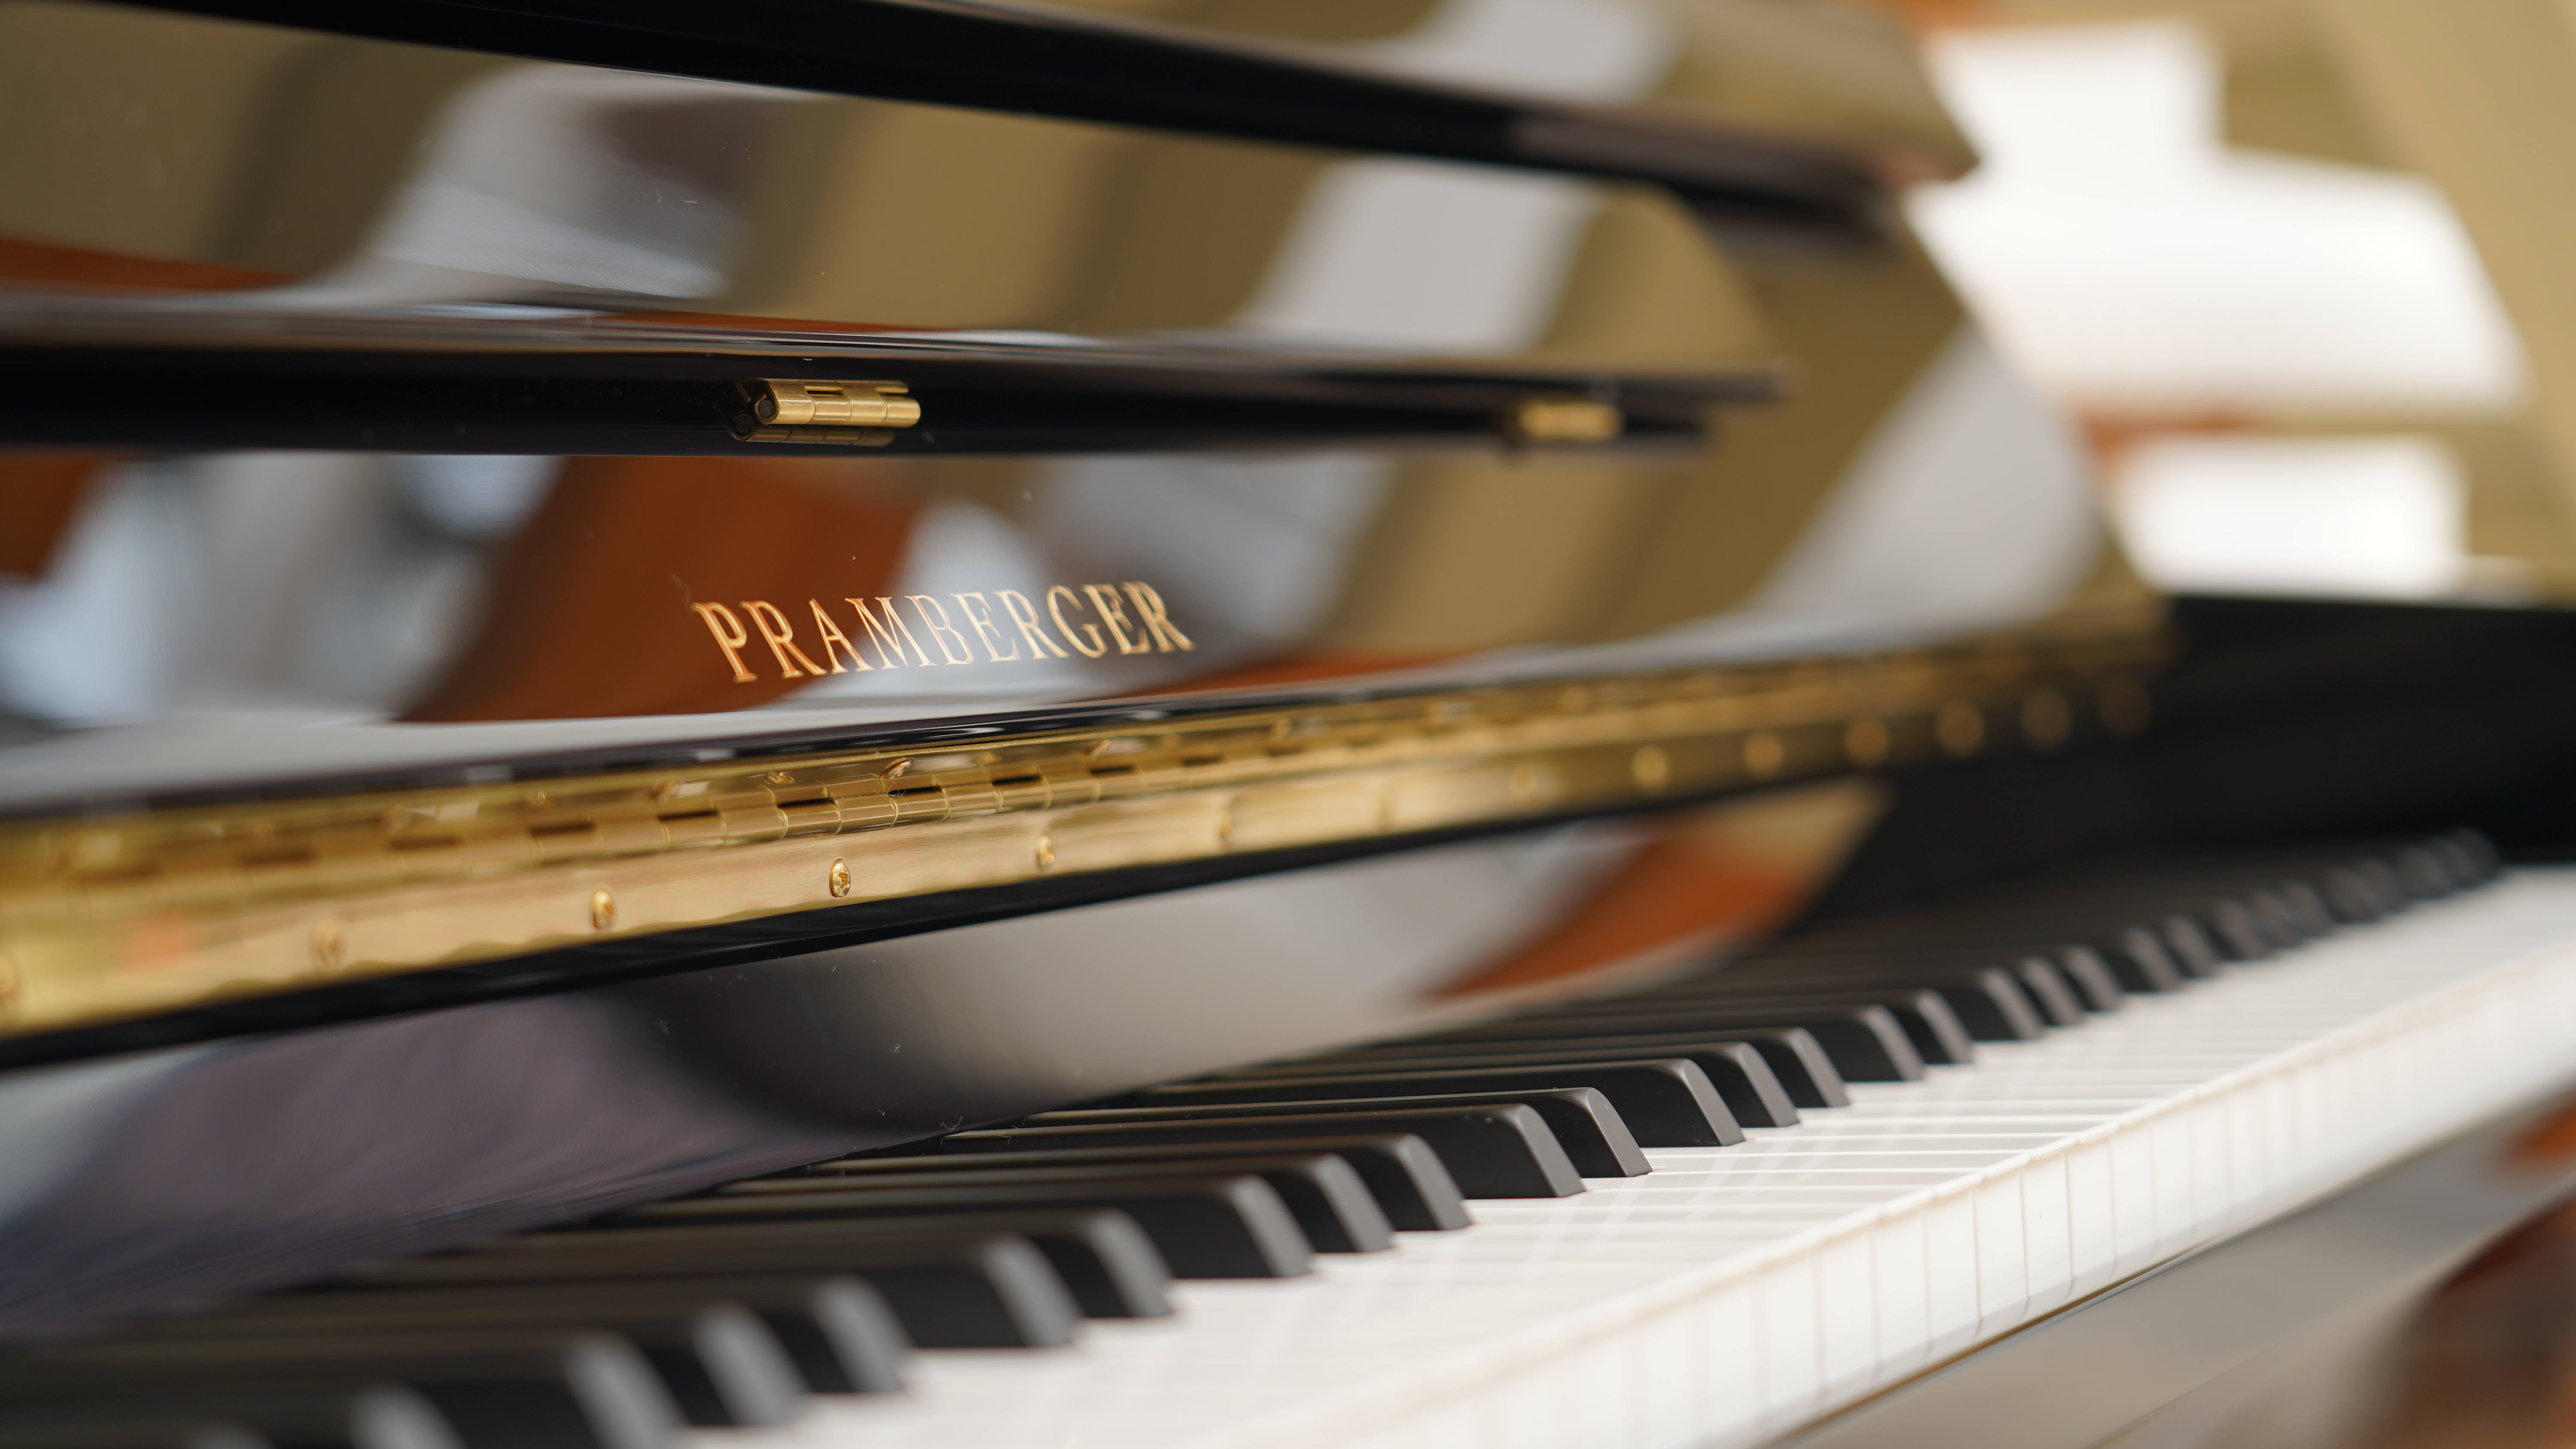 世界中の厳選された素材を使用して製作された芸術的な逸品 PRAMBERGER/プレンバーガーは、世界中の厳選された素材を使用して製作されています。 その歴史はさかのぼること約200年。プレンバーガー家は1800年代から活躍するピアノマイスターの家系でした。1987年、ジョセフ・プレンバーガーが新しい […]